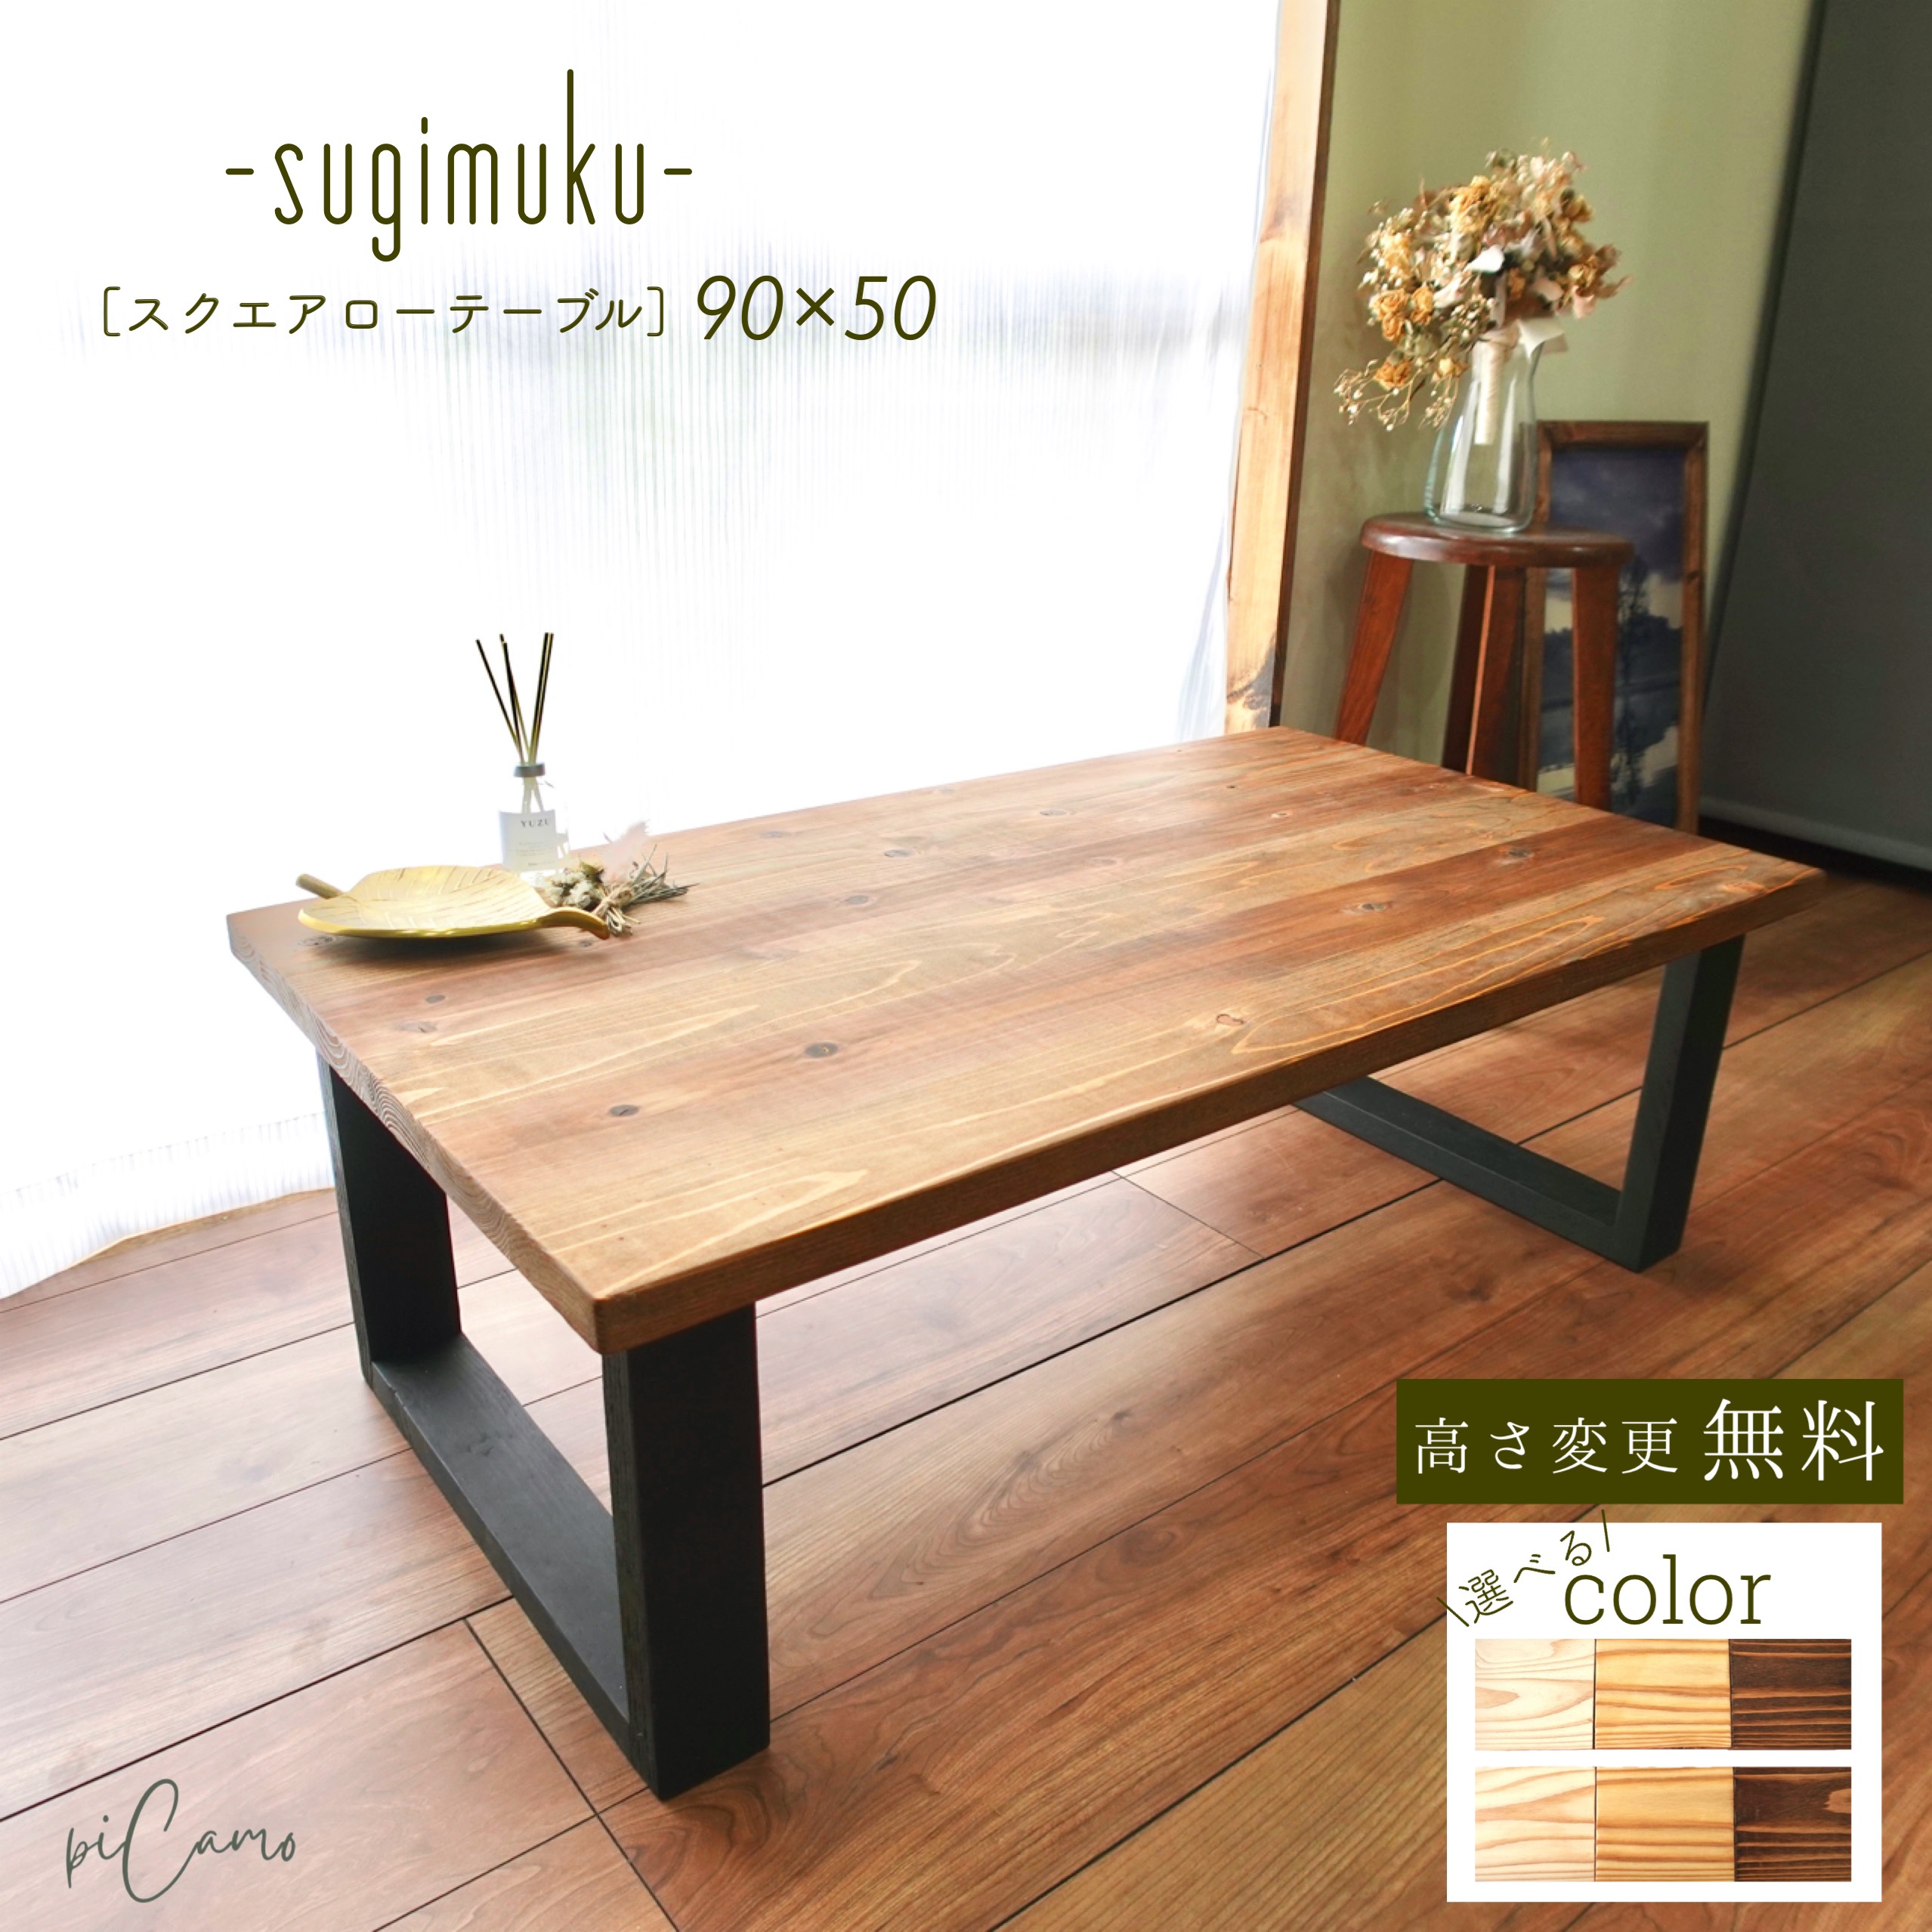 スクエアローテーブル90cm×50cm《sugimukuシリーズ》組み立て簡単 ロー ...